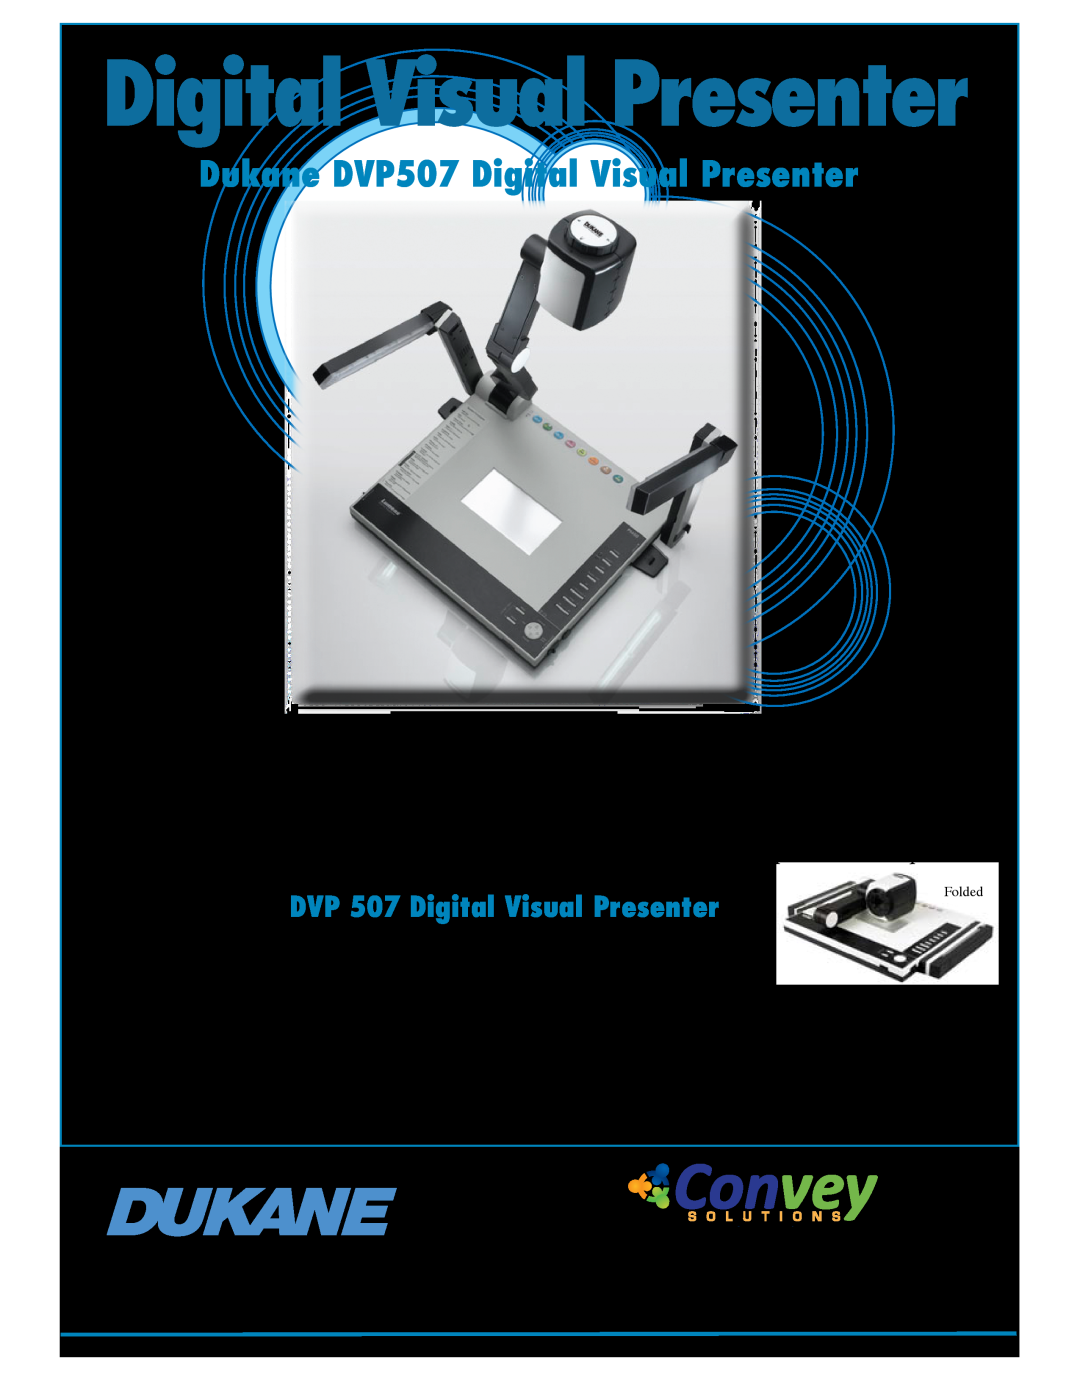 Dukane manual Convey, Dukane DVP507 Digital Visual Presenter, DVP 507 Digital Visual Presenter 